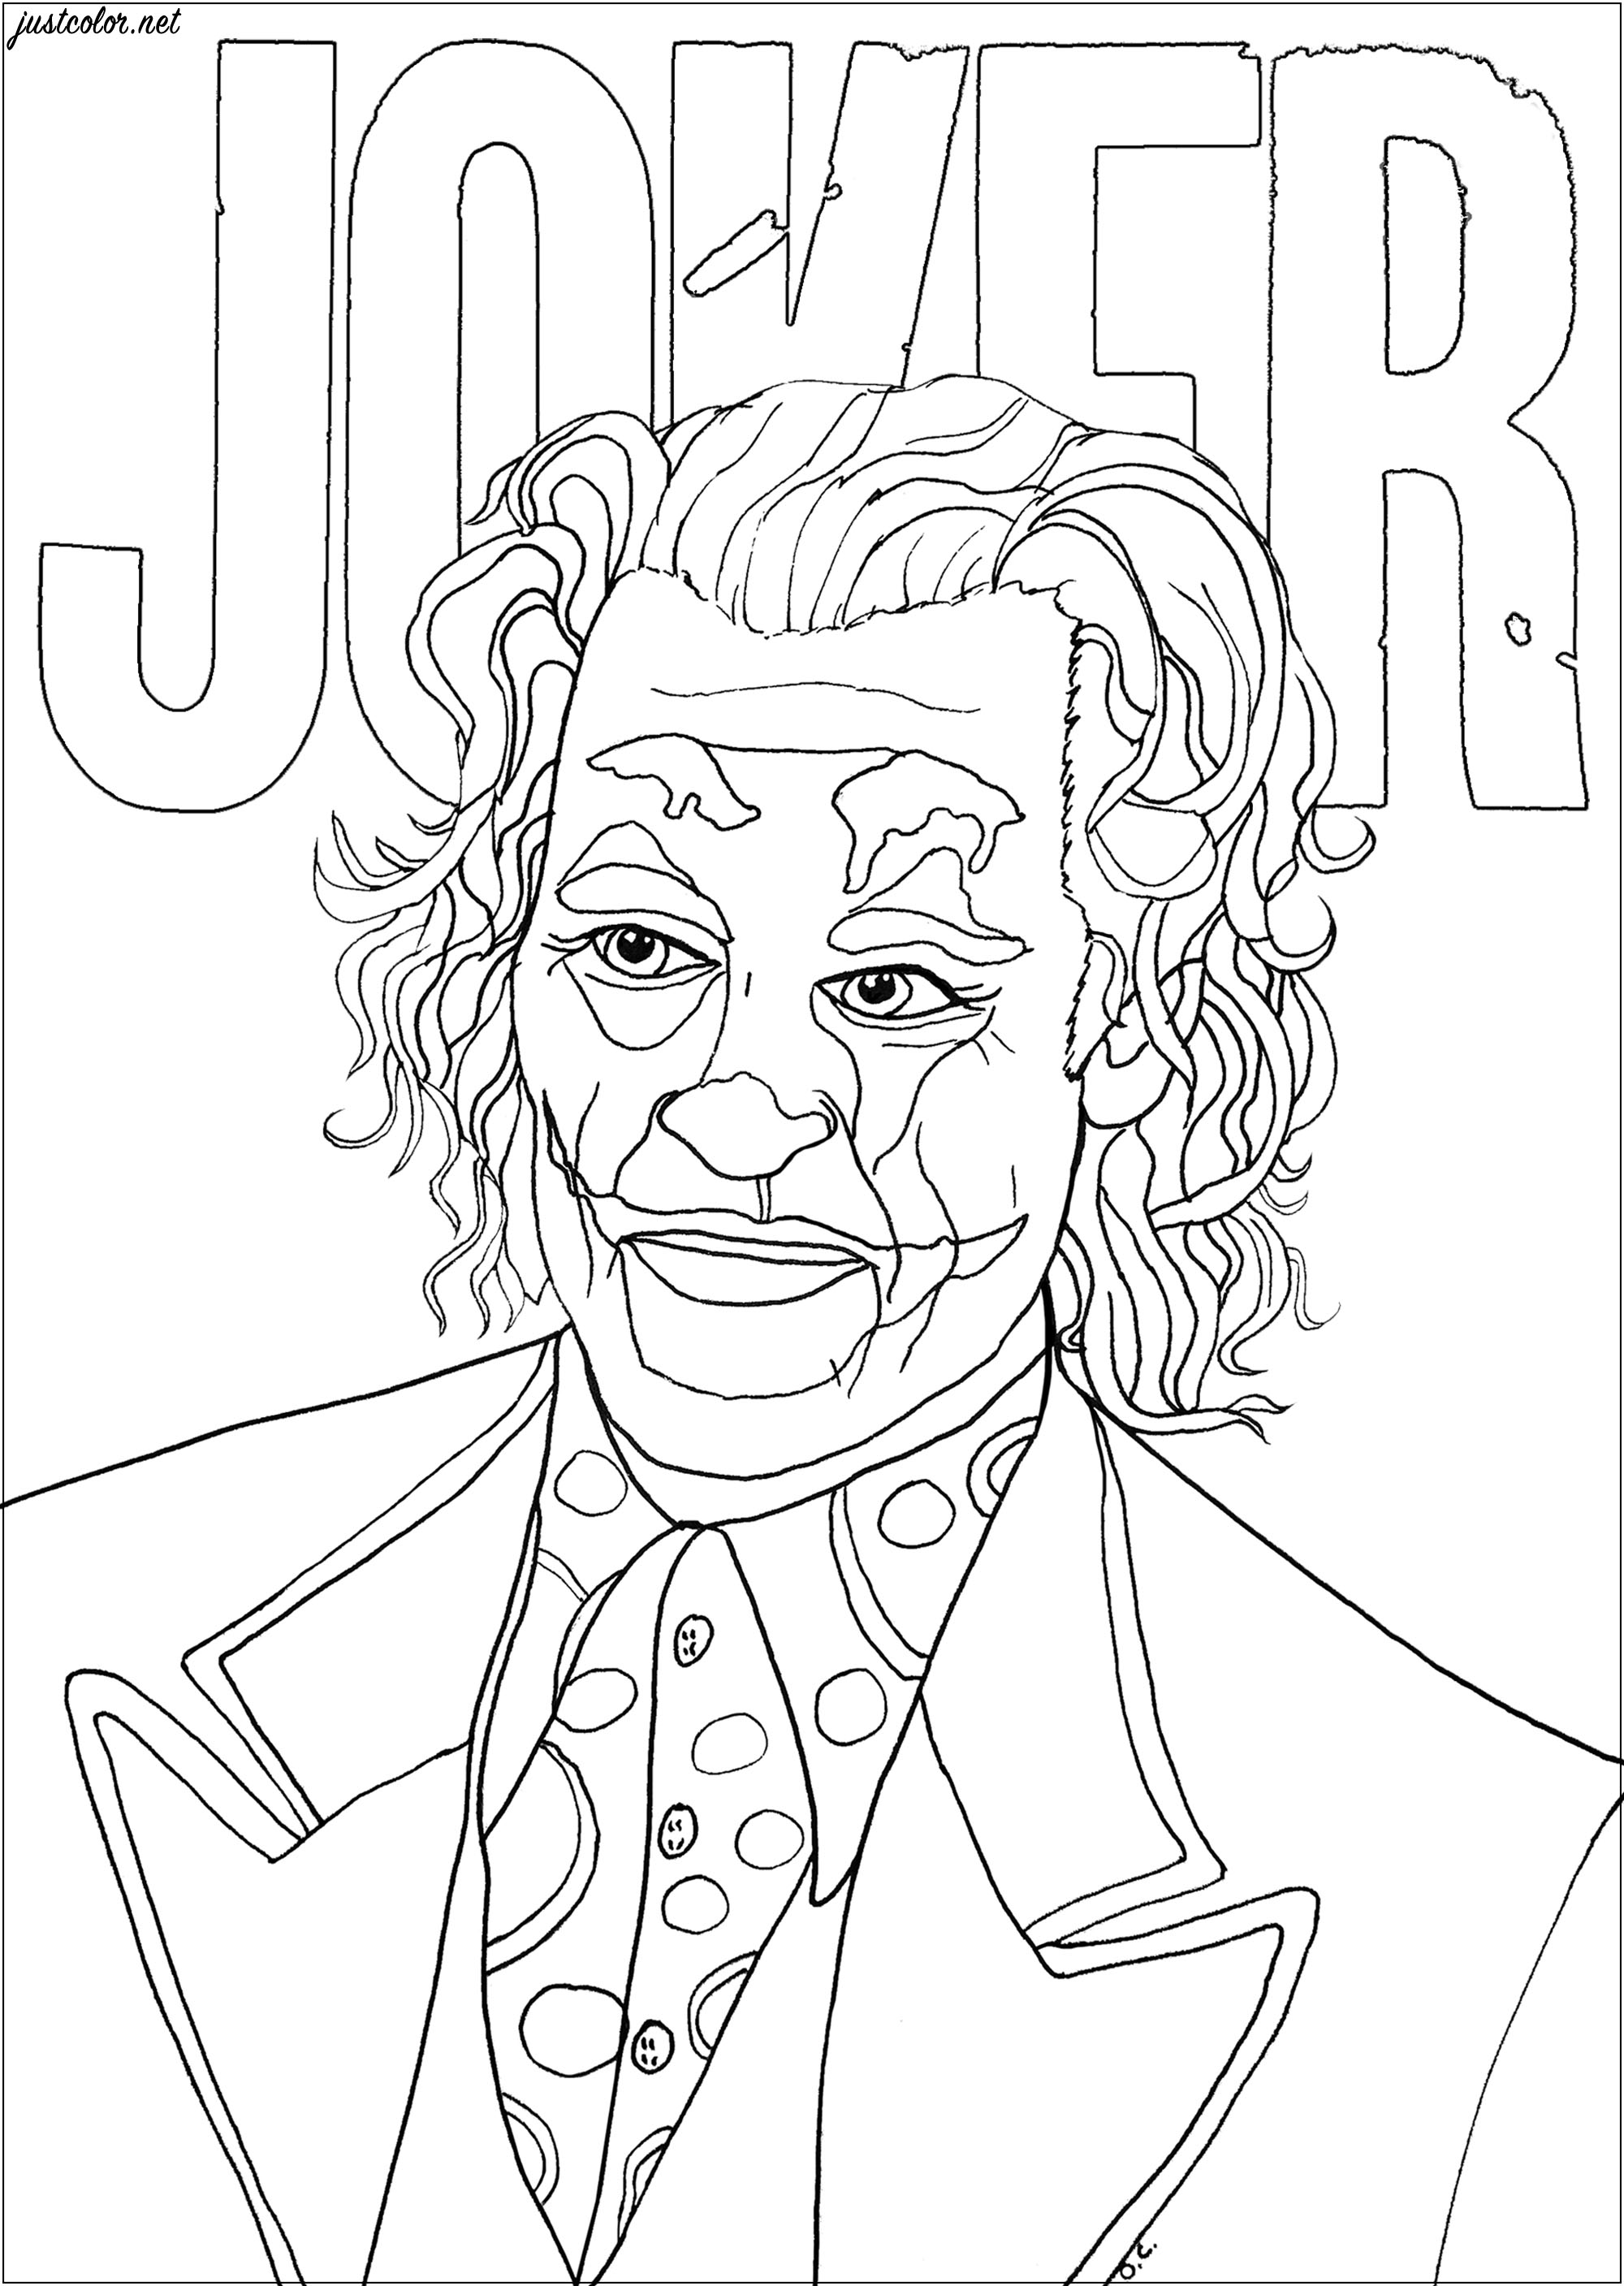 Página para colorir inspirada no Joker, interpretado por Joaquin Phoenix no filme de 2019 realizado por Todd Phillips. O Joker é considerado o principal supervilão da DC Comics.